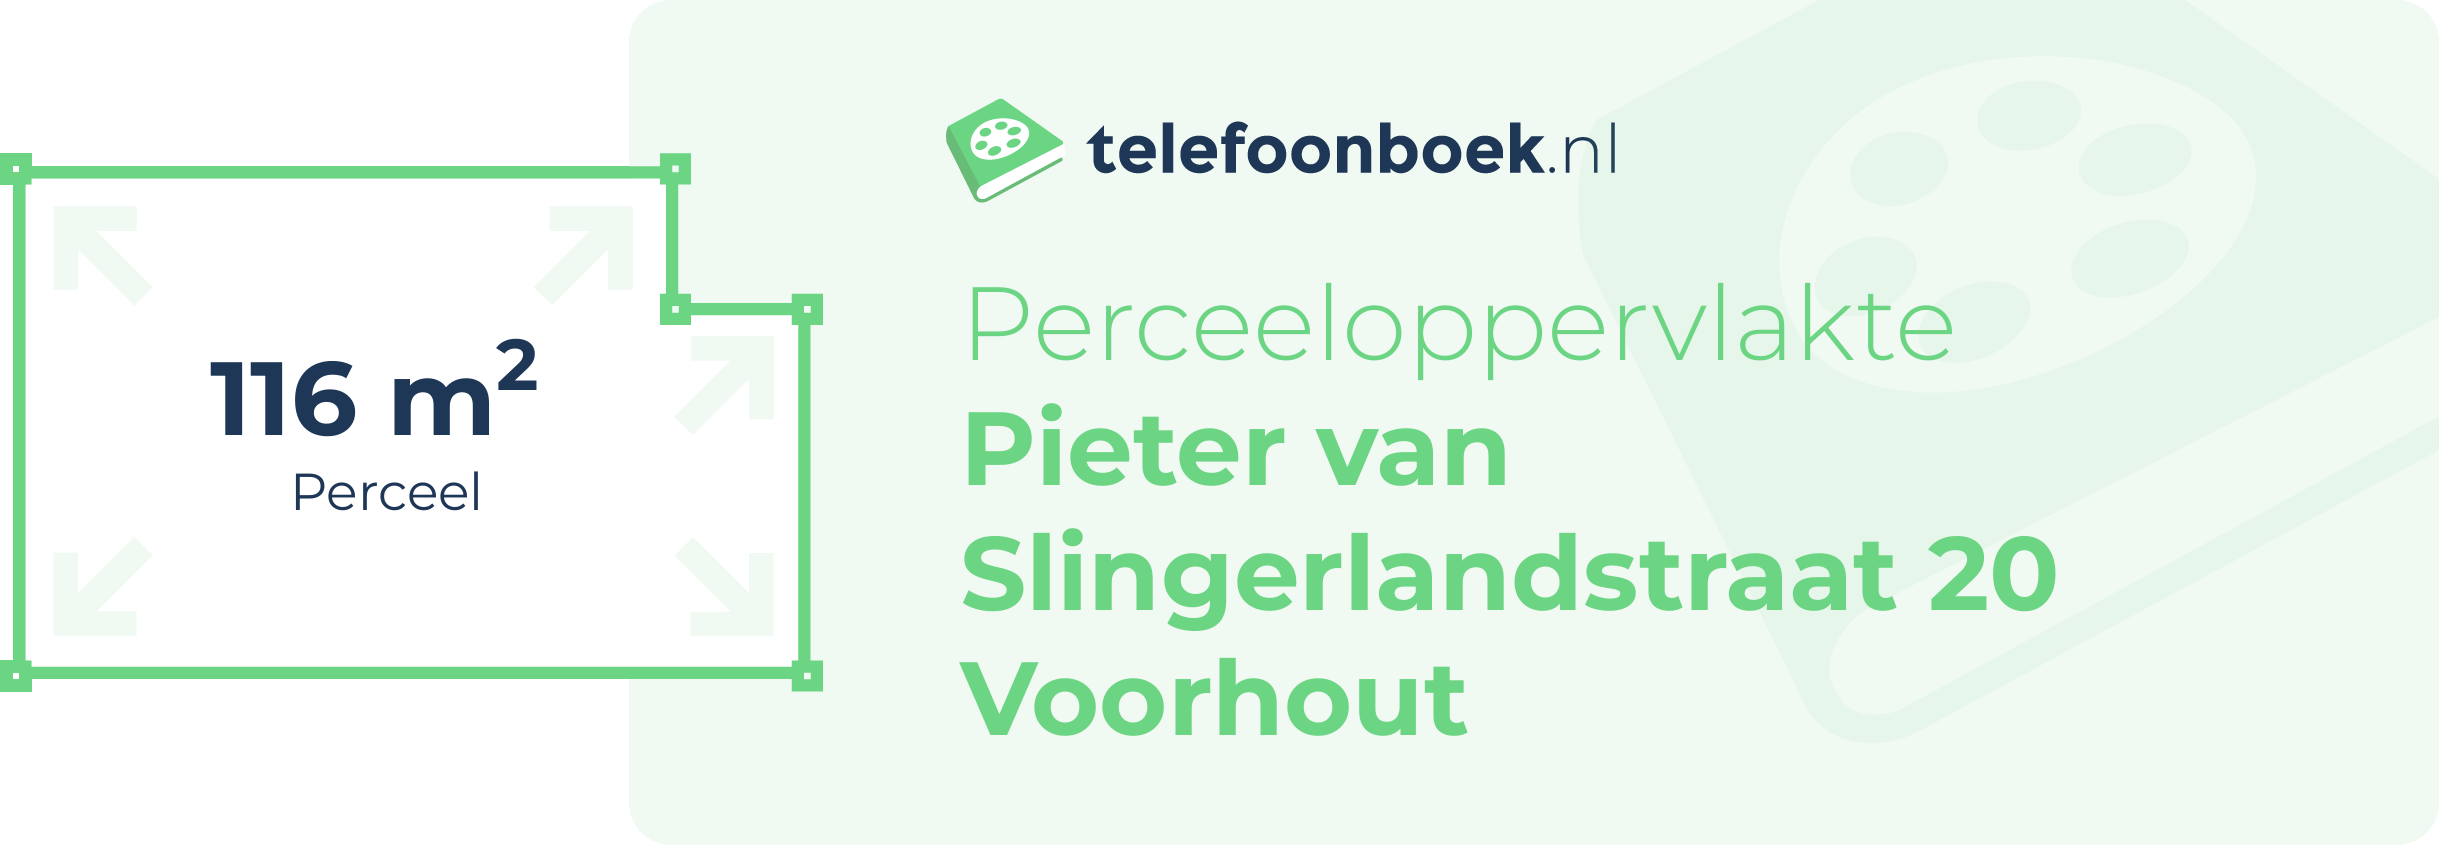 Perceeloppervlakte Pieter Van Slingerlandstraat 20 Voorhout